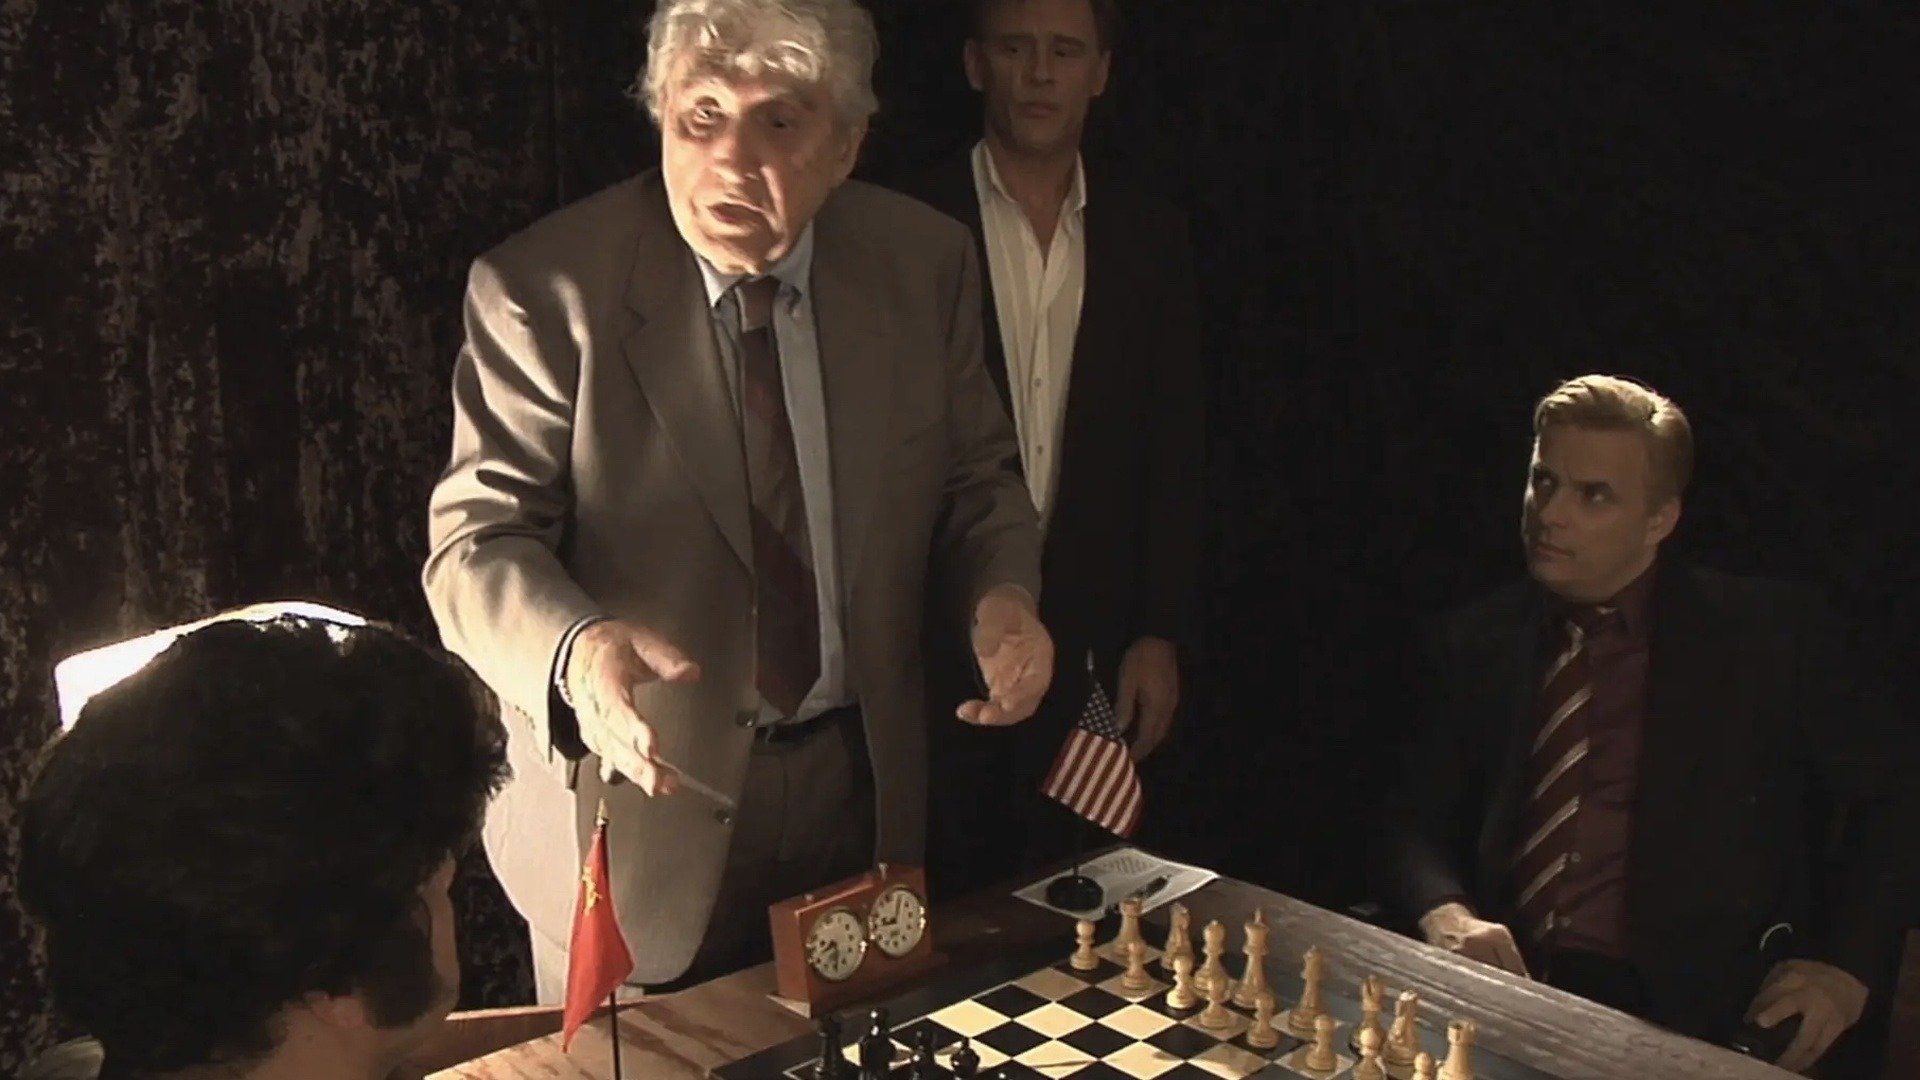 Bobby Fischer - Biography - IMDb